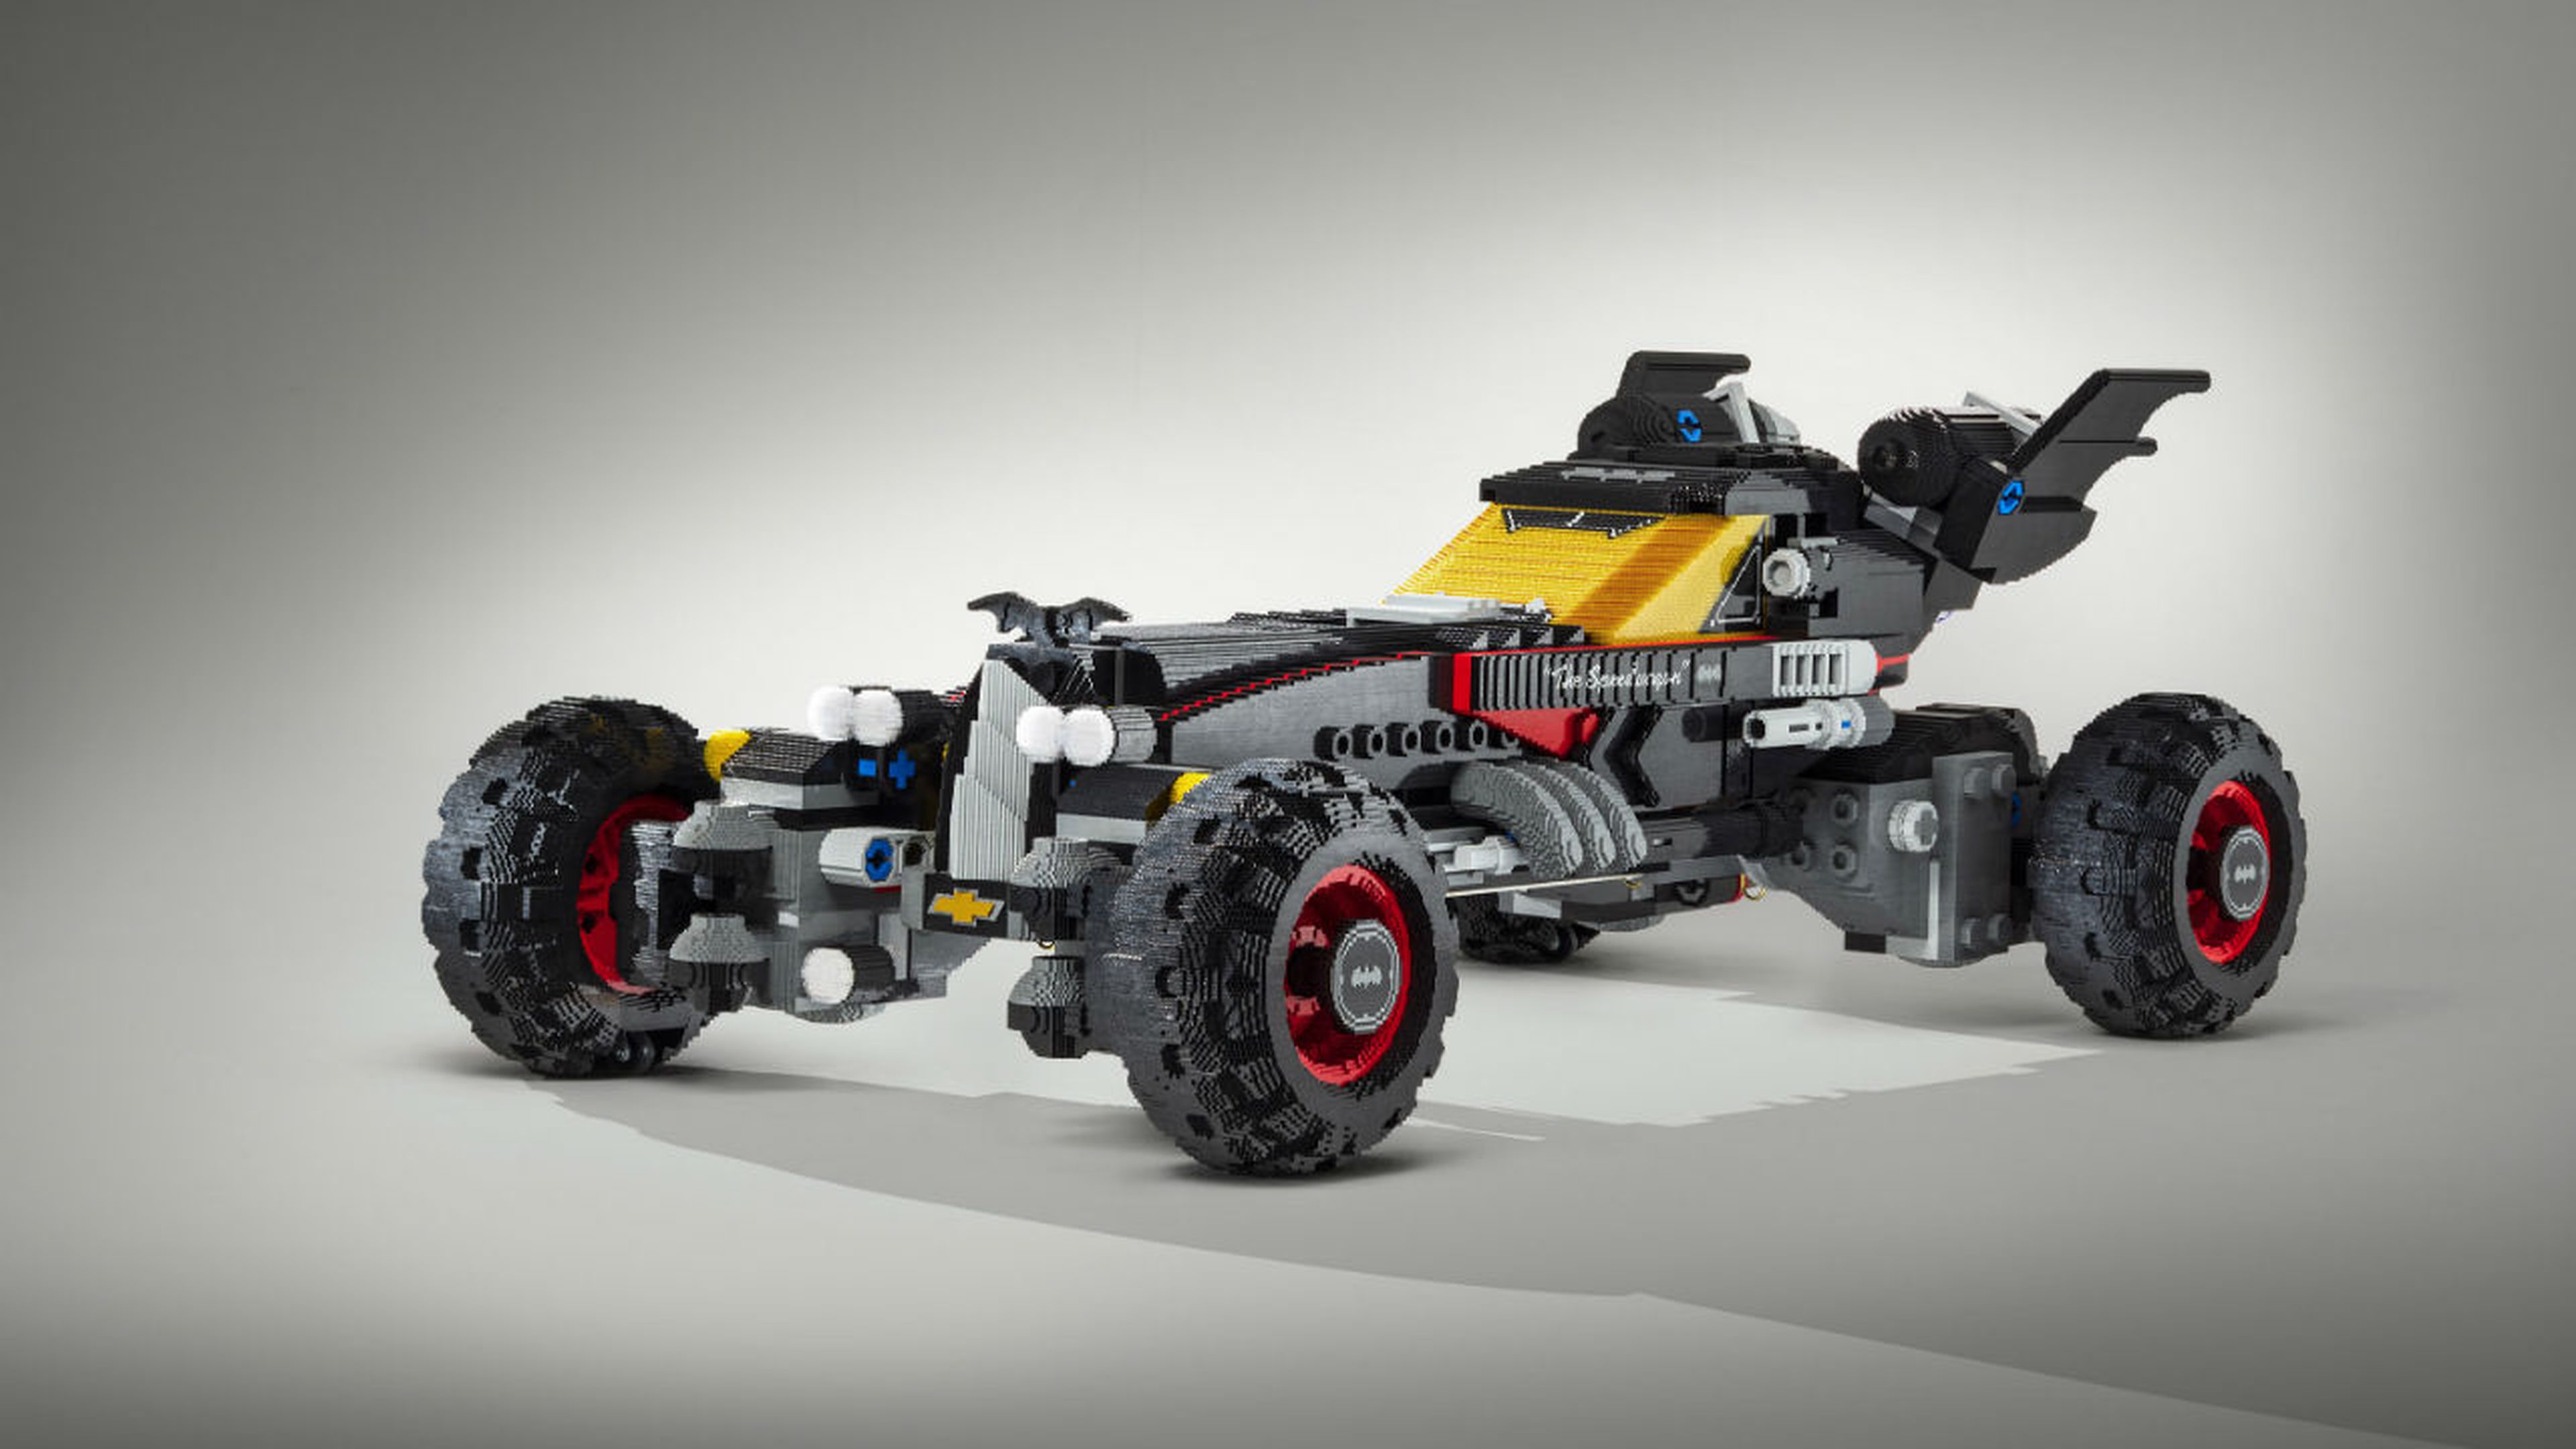 Los 5 mejores coches de Lego